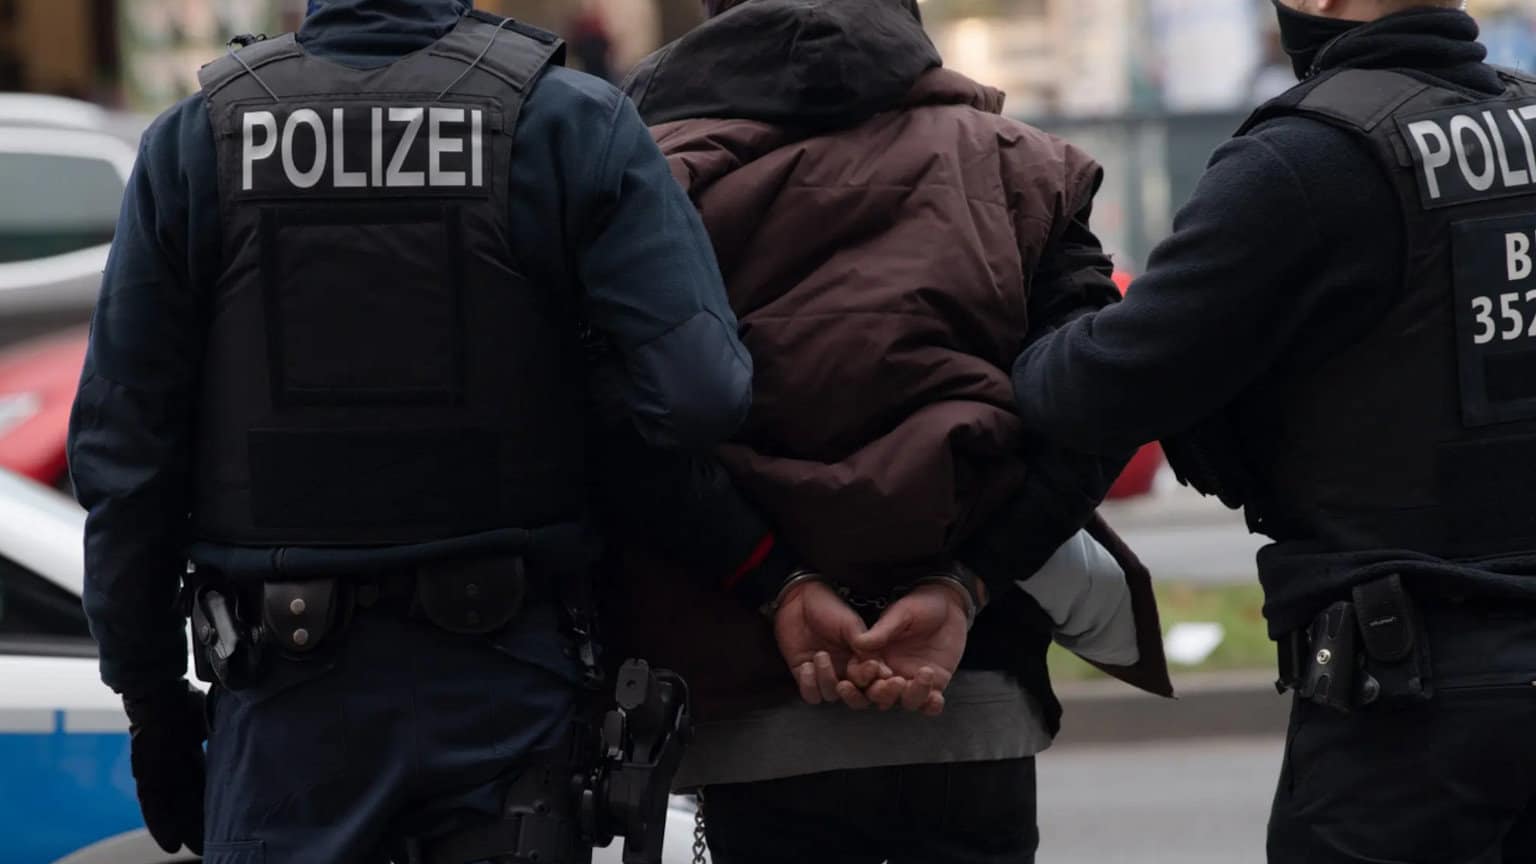 Bundesregierung bestätigt: Deutsche werden häufiger Opfer von Ausländern als umgekehrt